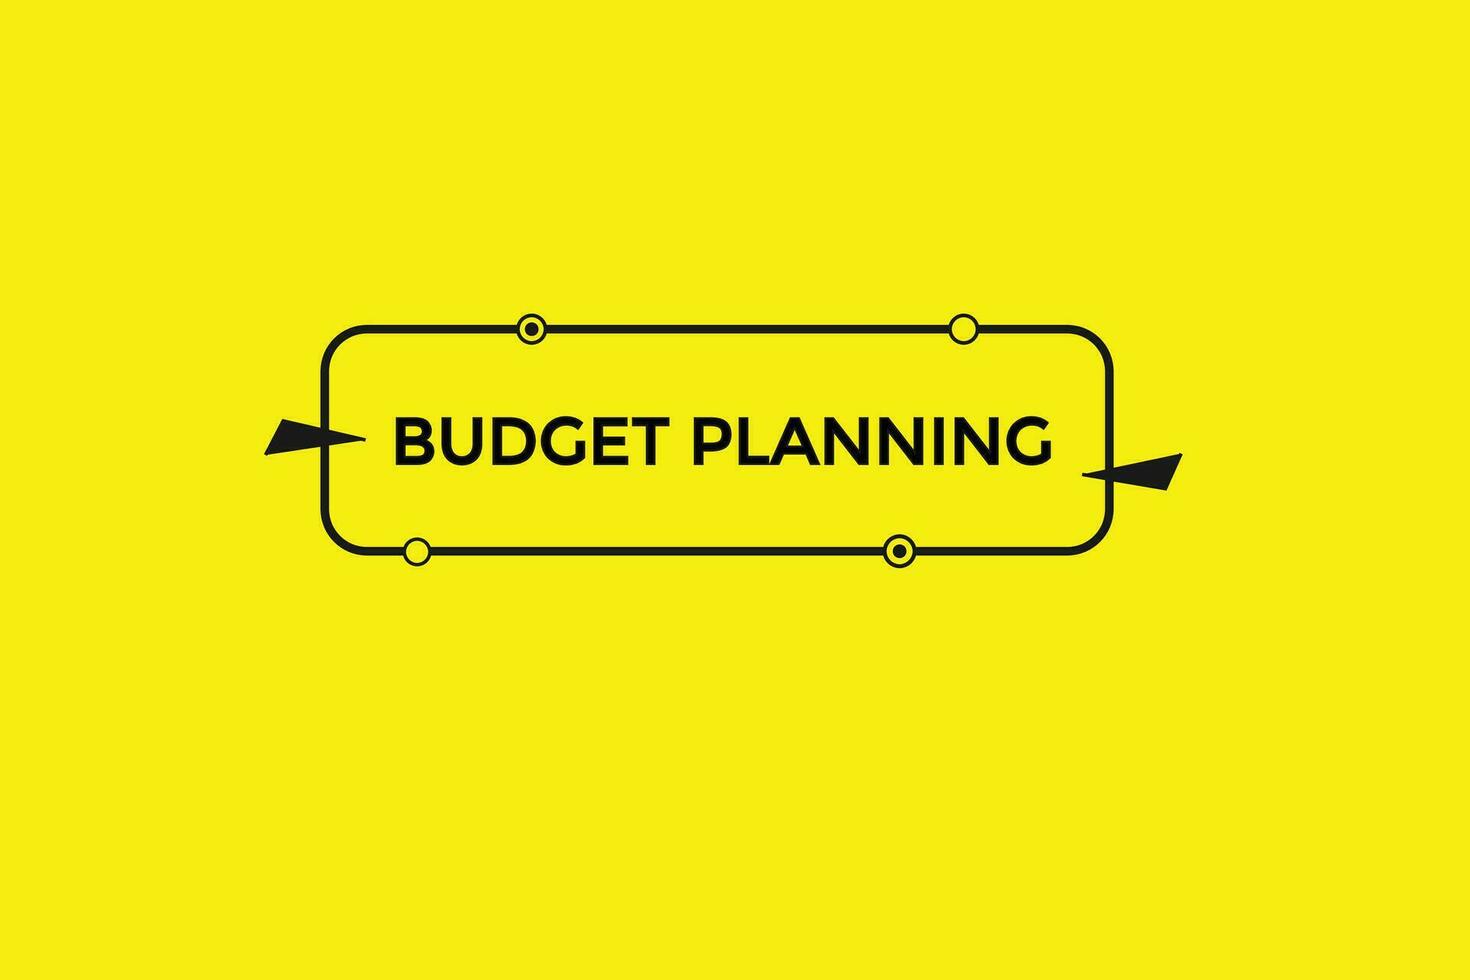 nuevo presupuesto planificación moderno, sitio web, hacer clic botón, nivel, firmar, discurso, burbuja bandera, vector